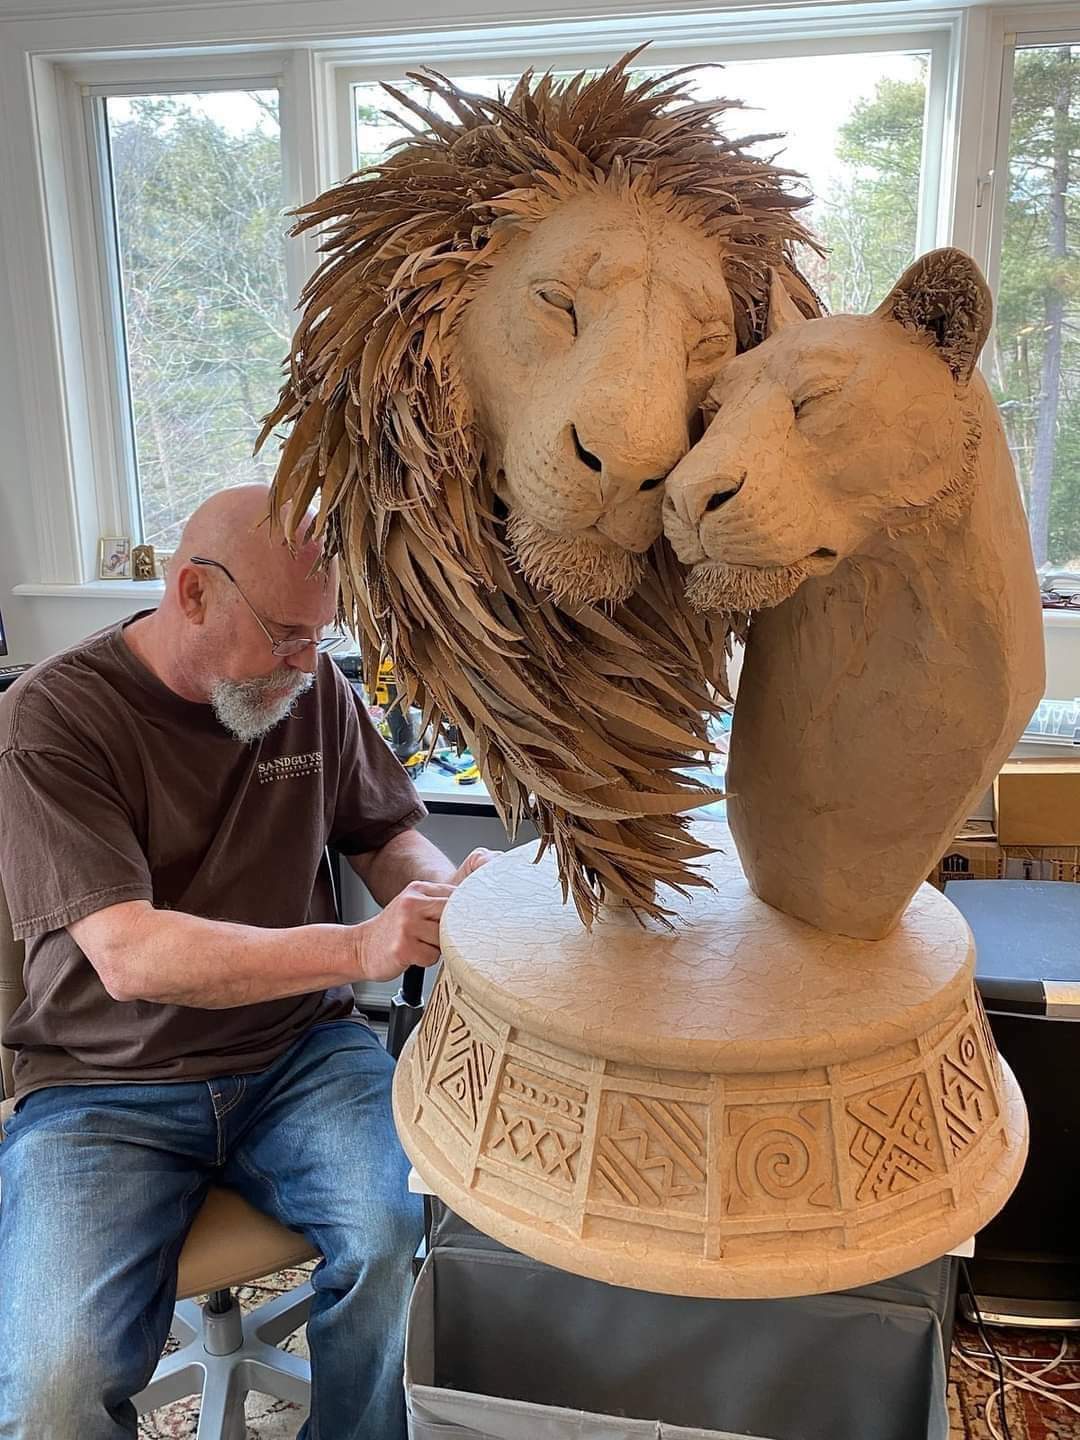 une sculpture de 2 lions créée à partir de carton recyclé, de sacs en papier et de colle. crédit : sue beatrice et andy gertler